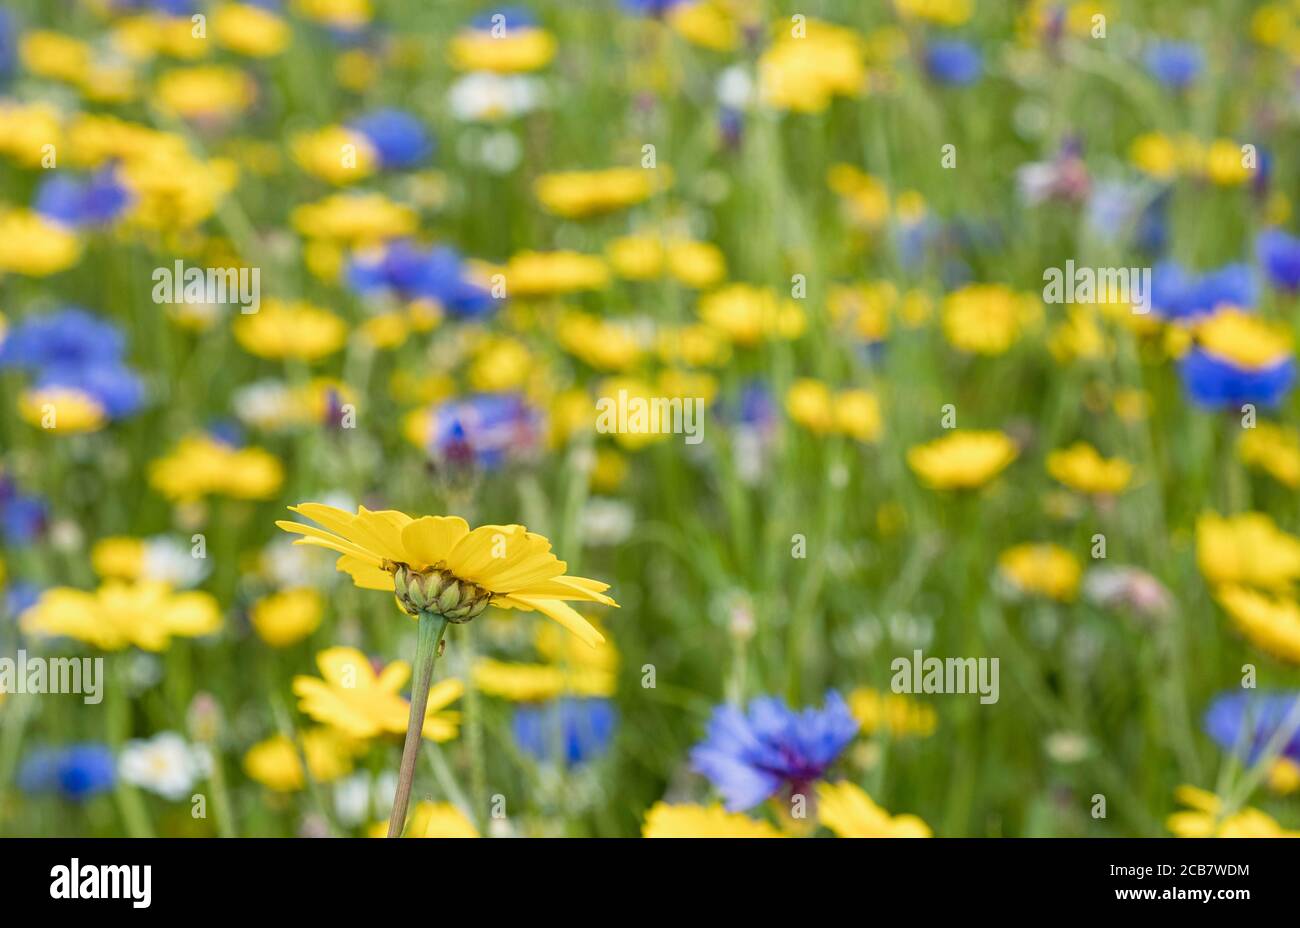 Daisy, fiore giallo che cresce all'aperto in un campo di fiori di prato inglese, tra cui bottoni Bachelor, fiori di mais e varietà assortite di daises. Foto Stock